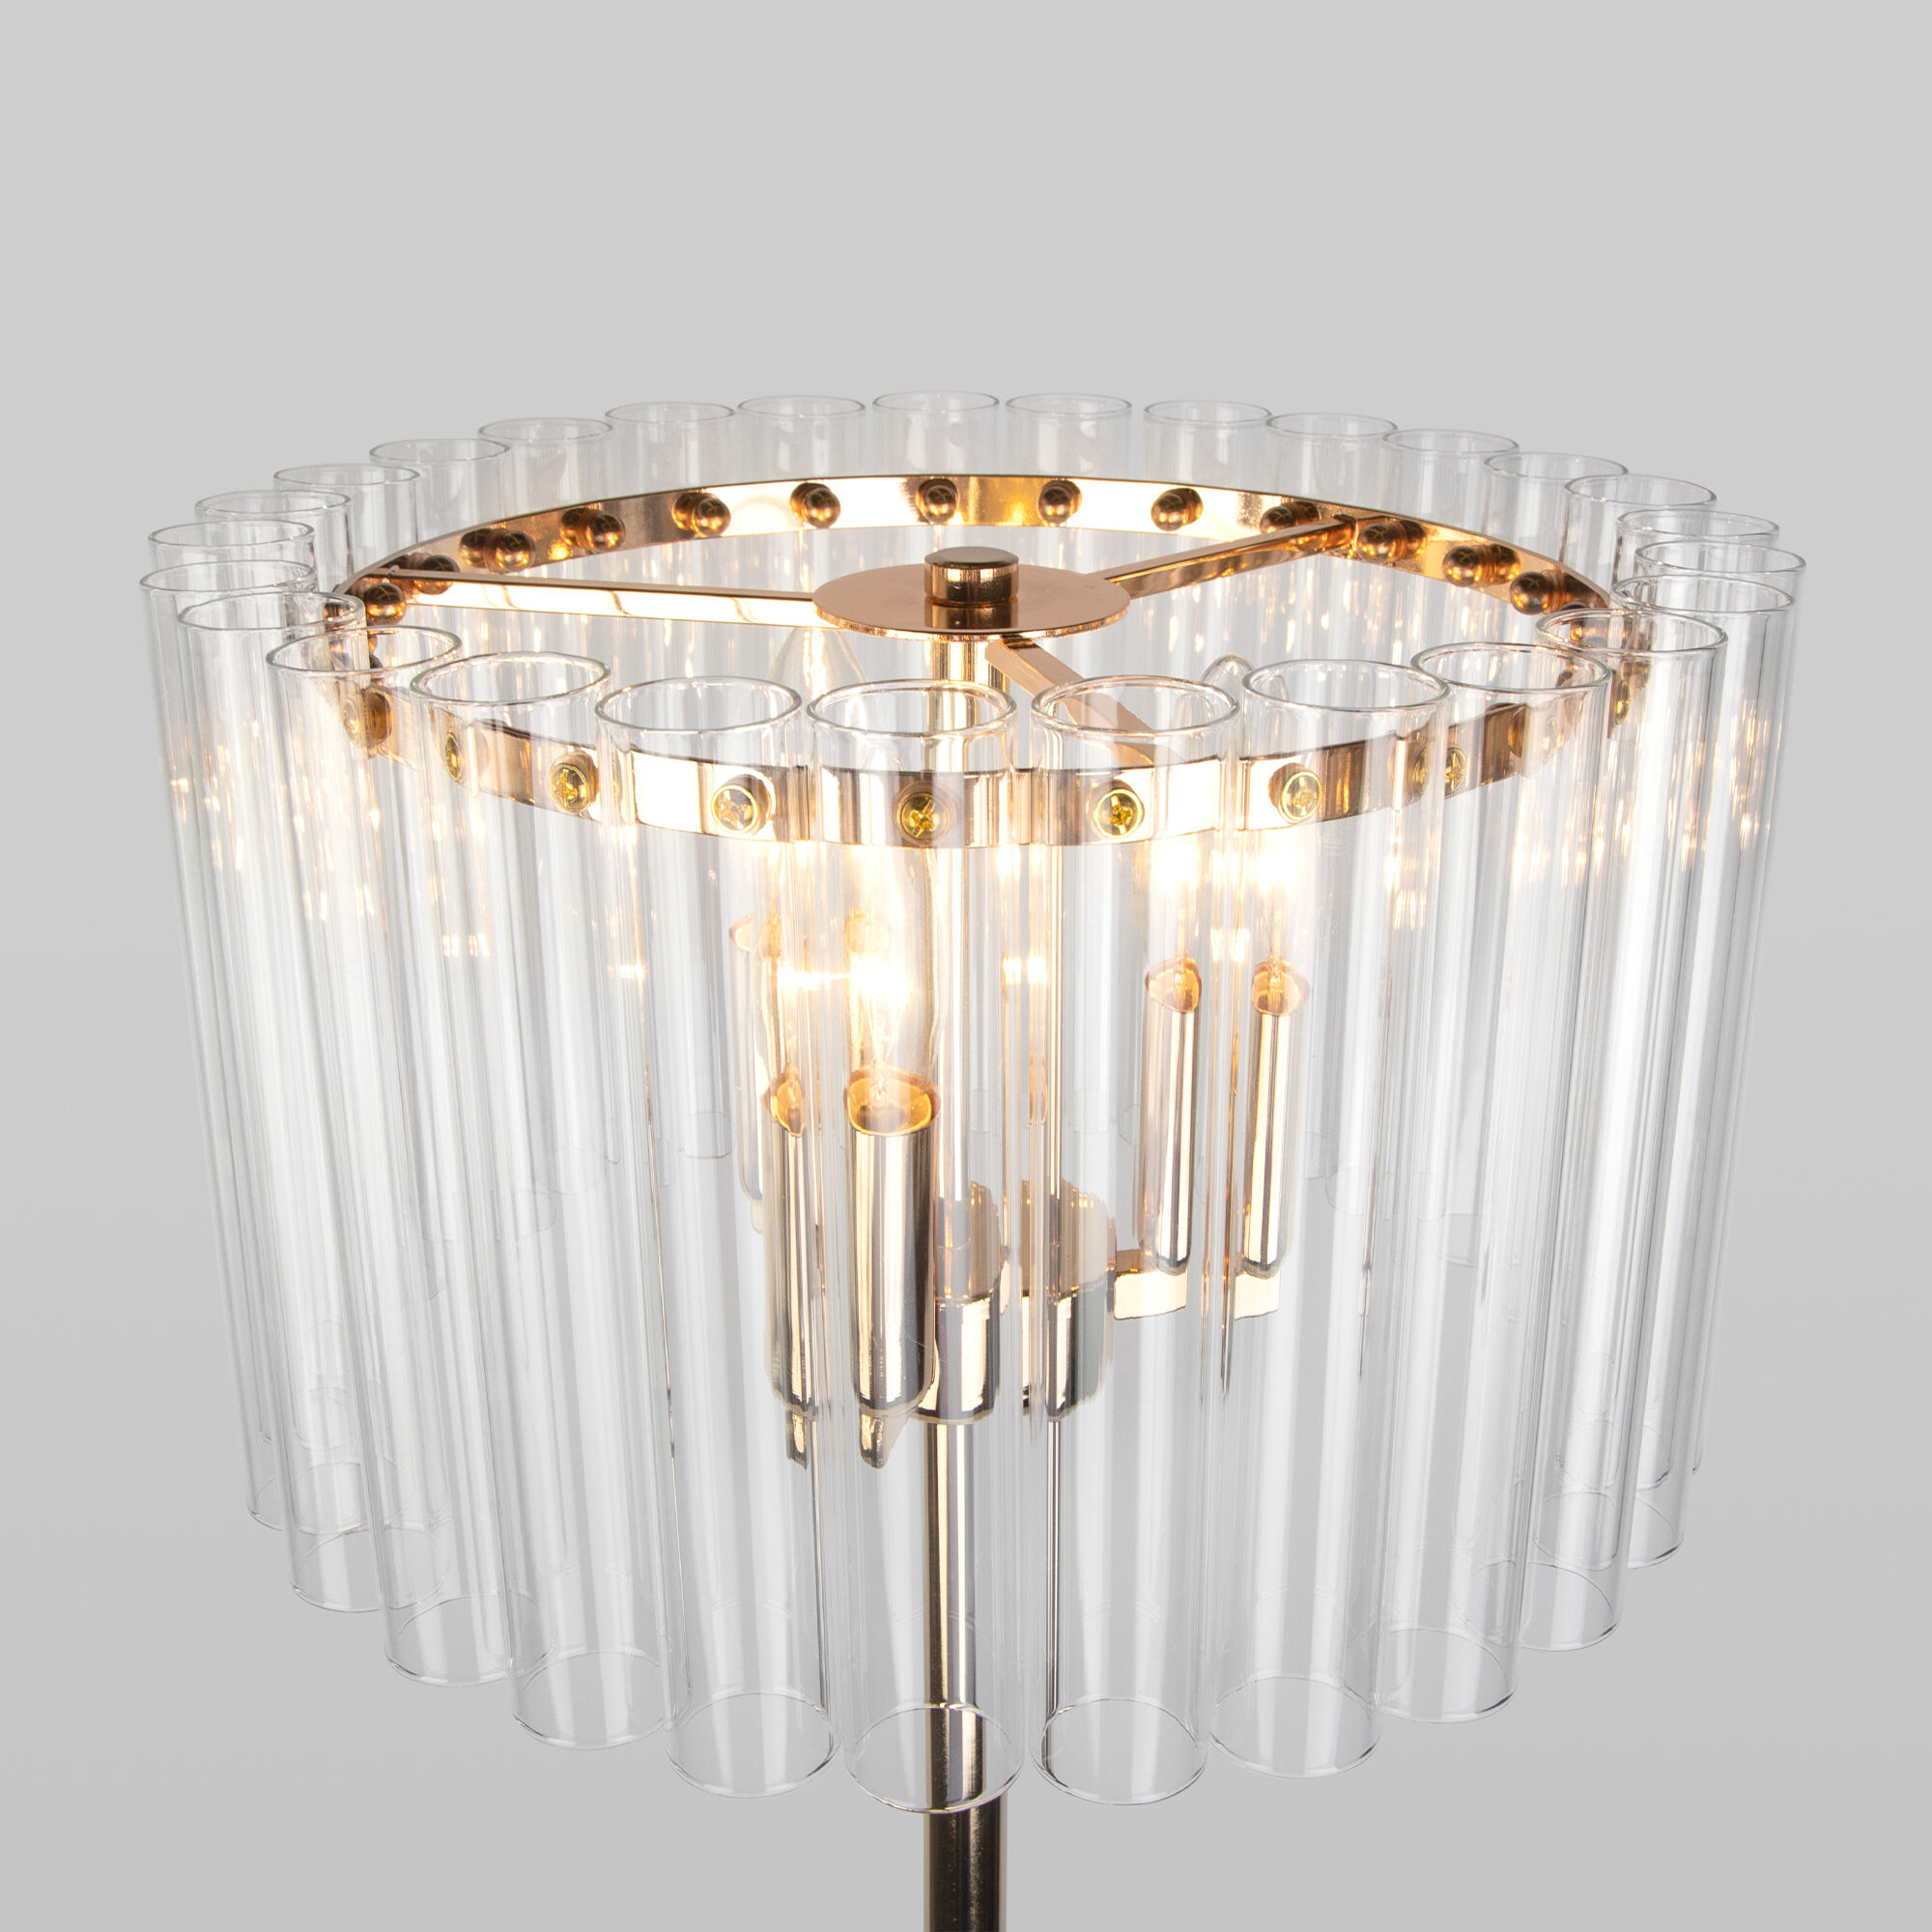 Напольный светильник со стеклянным плафоном Bogate's Flamel 01116/3 золото. Фото 3